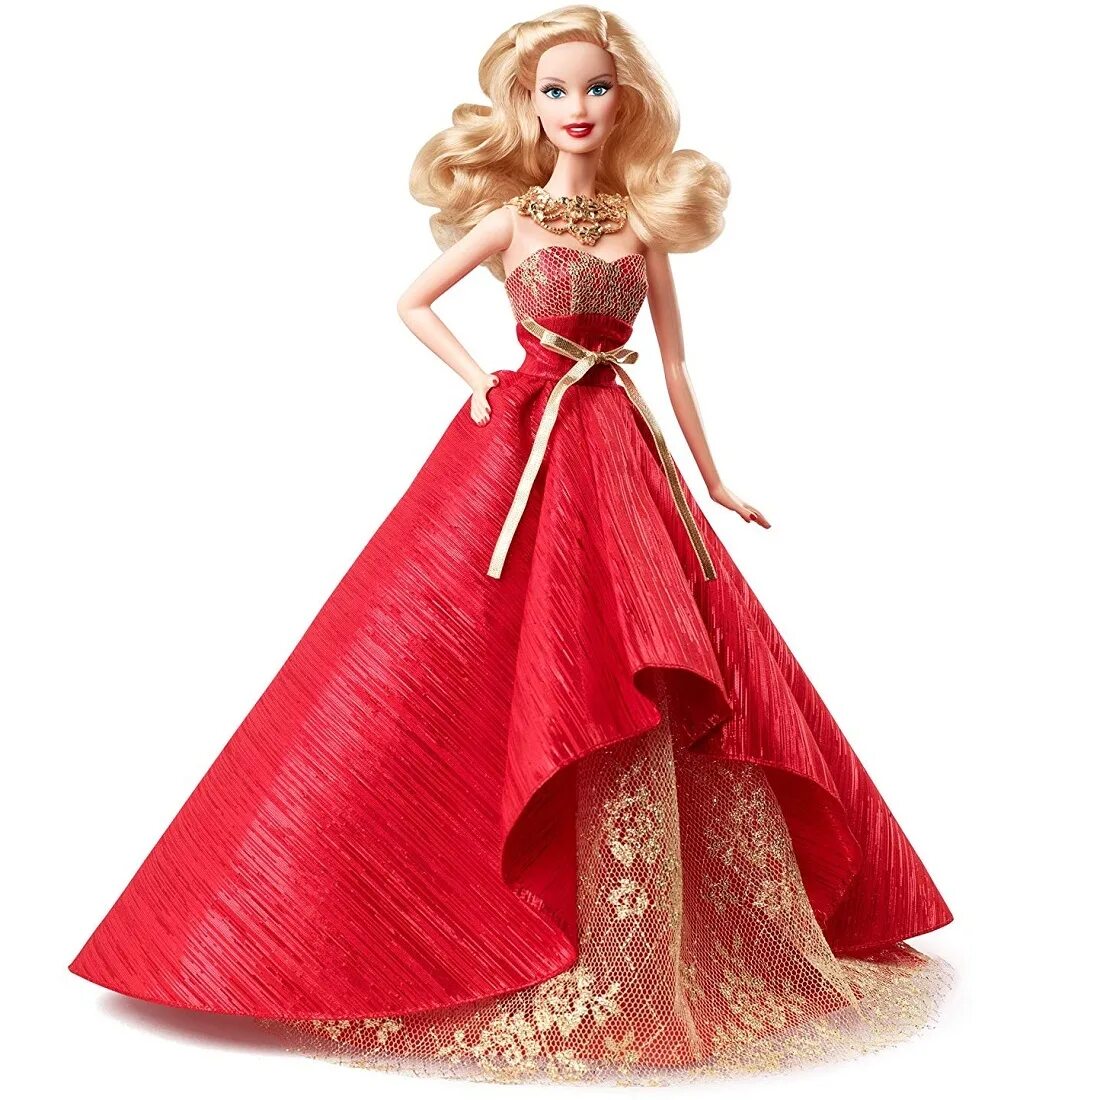 Barbie collections. Кукла Барби Холидей. Кукла Barbie - Барби "праздничная - 2015 год". Кукла Барби Холидей 2014. Кукла Барби Холидей 2018.